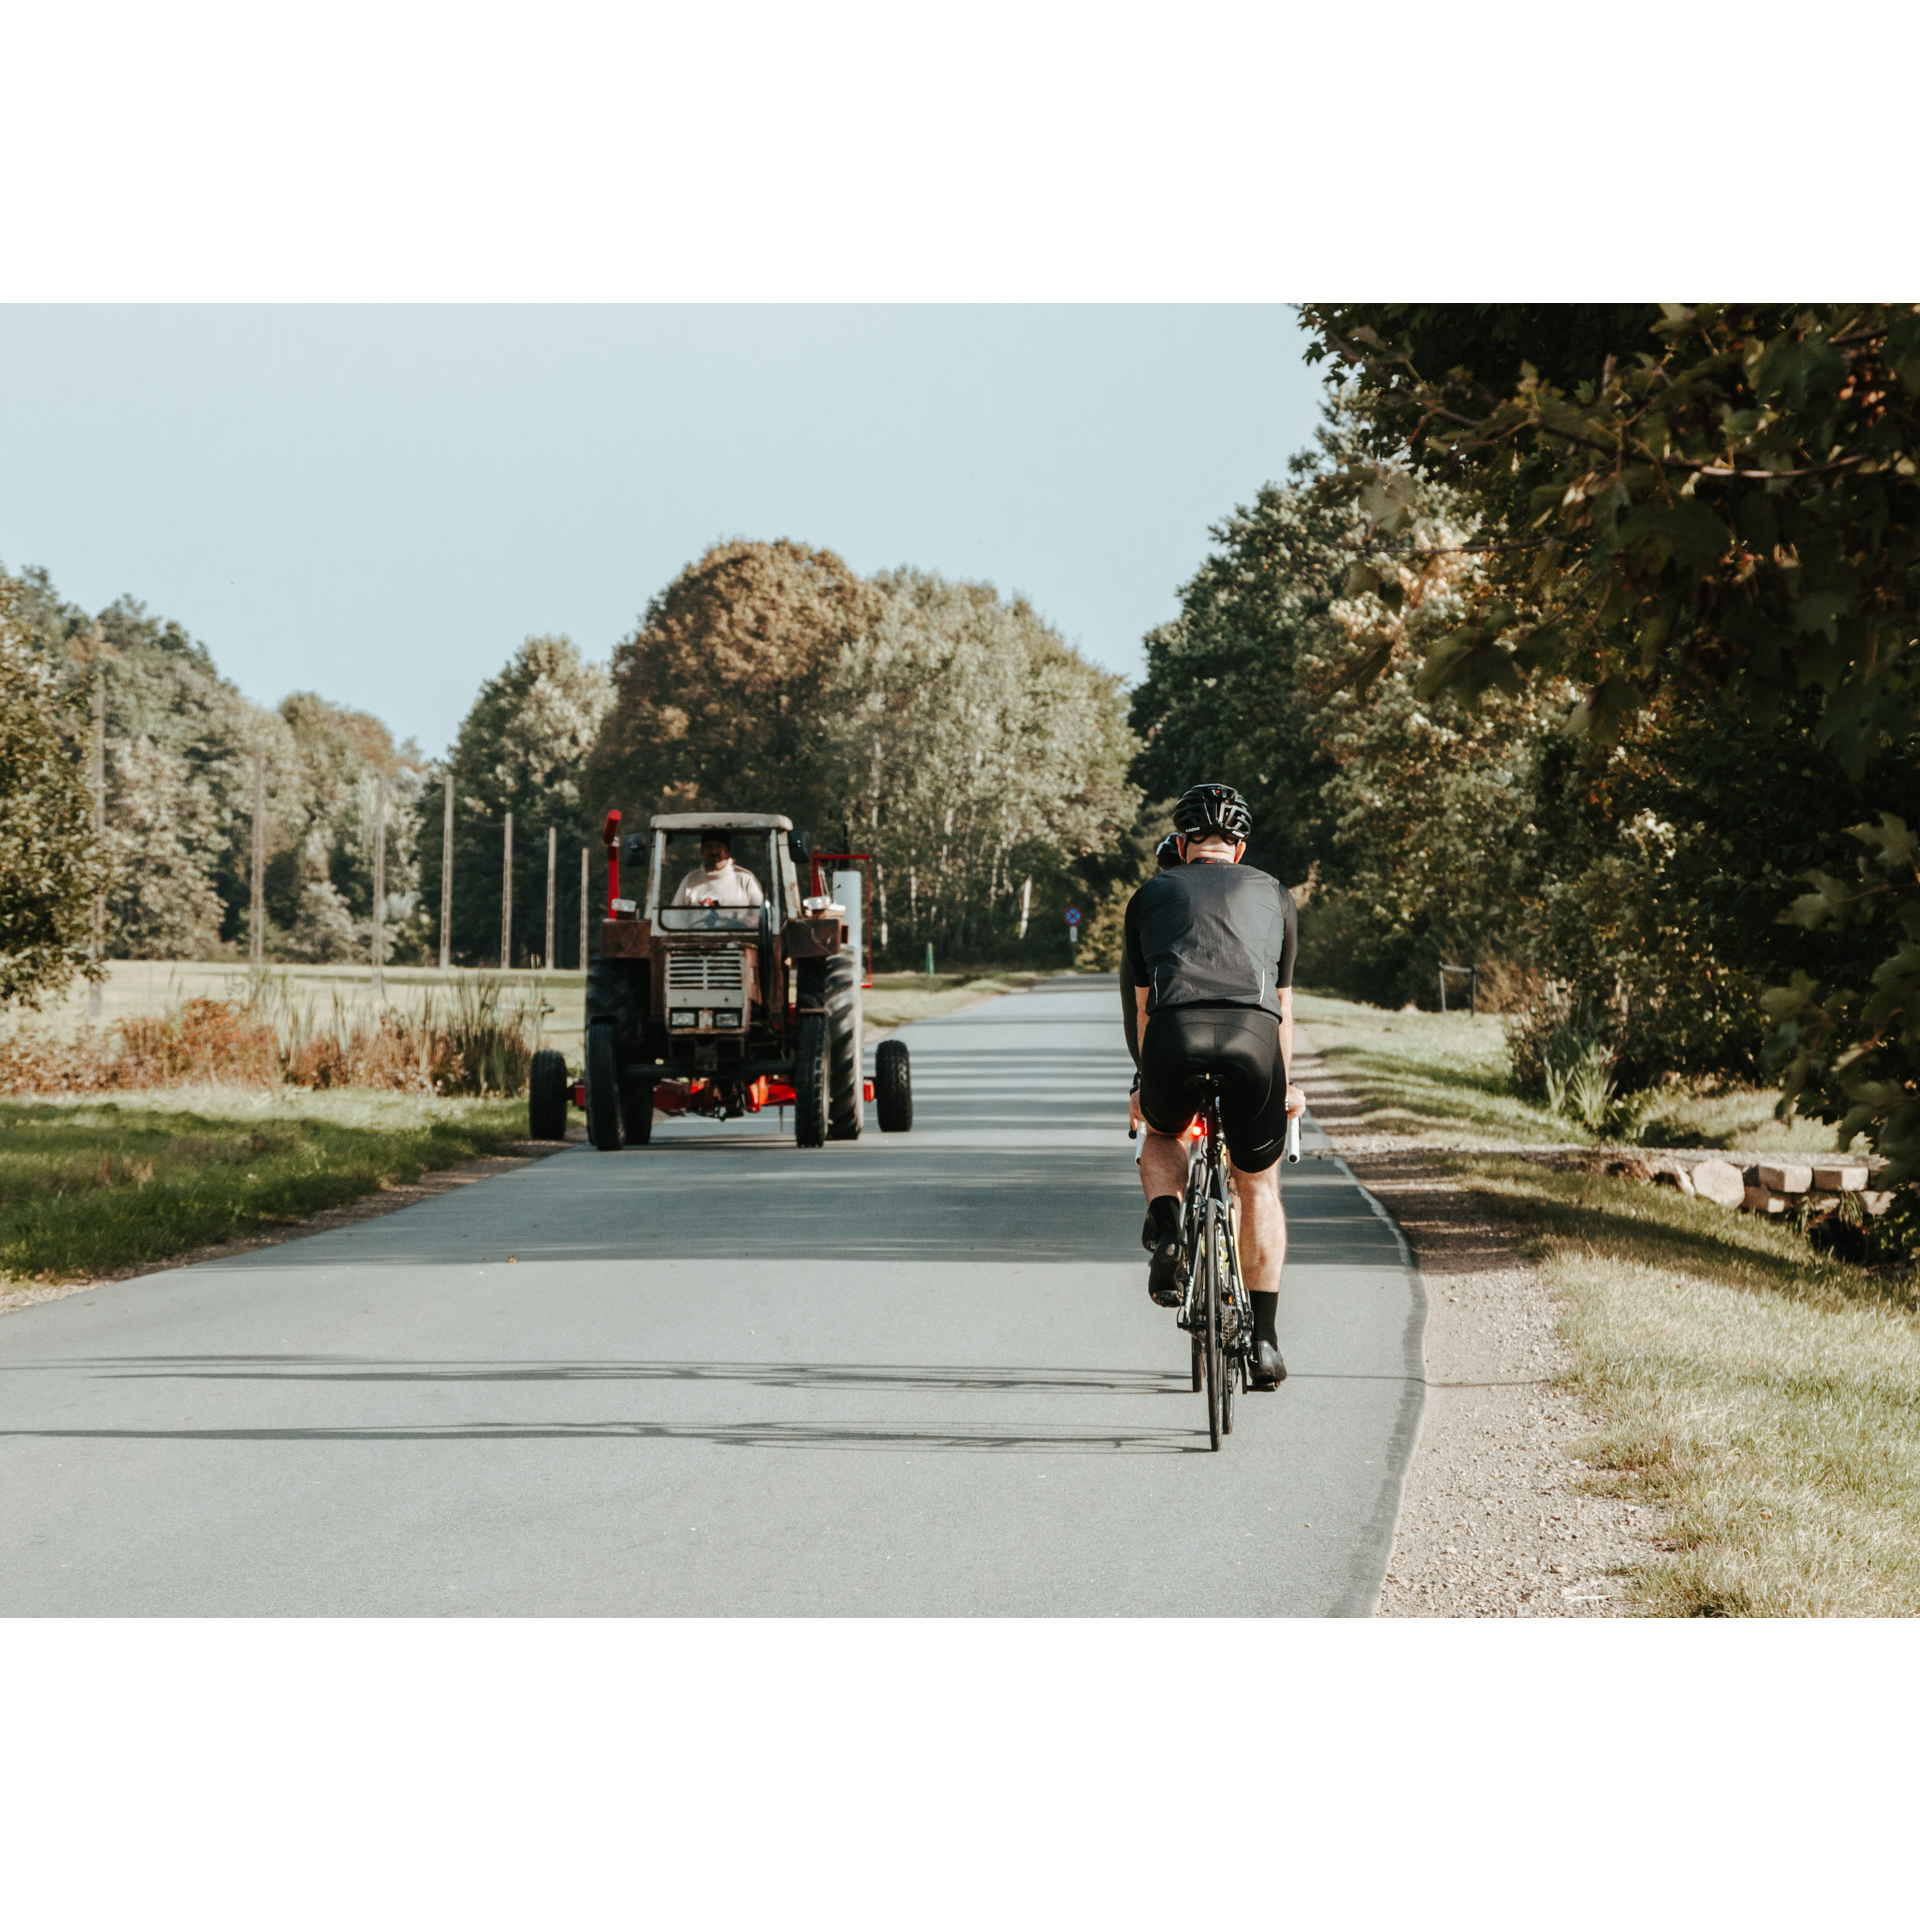 Dwóch kolarzy na rowerach w kaskach i czarnych strojach jadących asfaltową drogą wymijających się z traktorem jadącym w przeciwnym kierunku, w tle drzewa